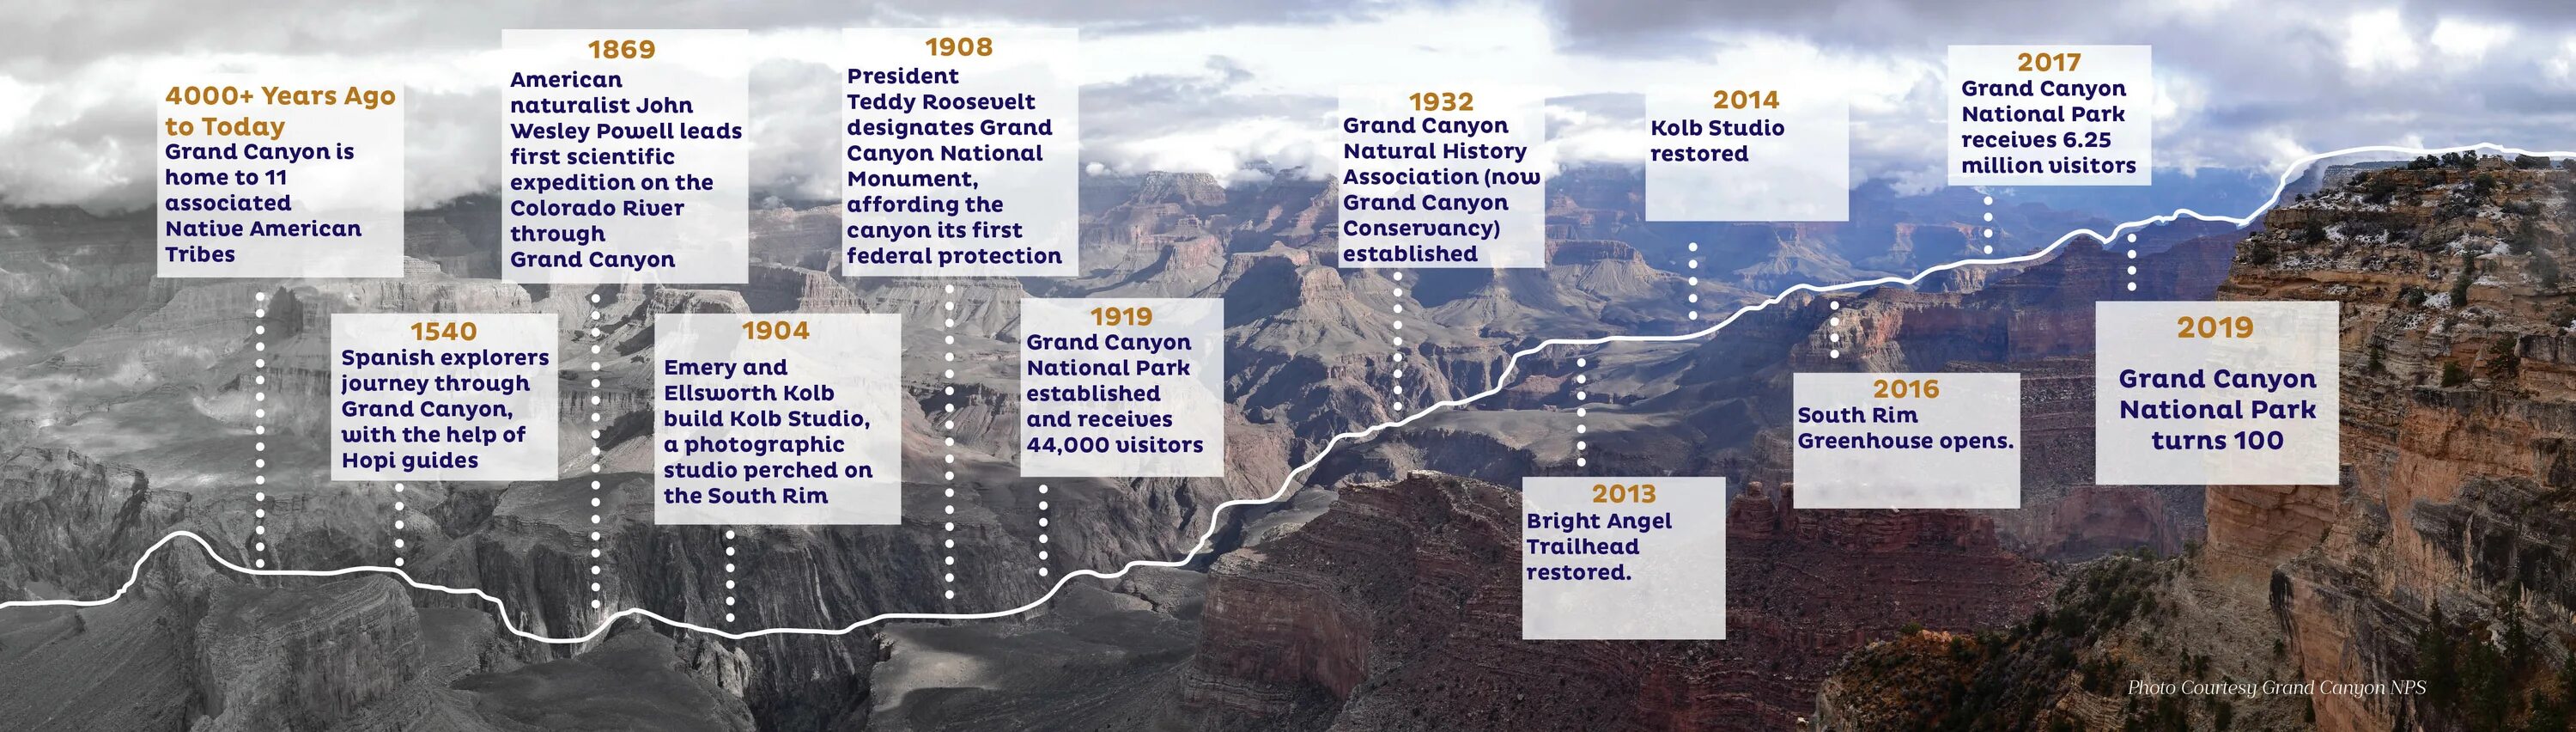 Гранд каньон схема. Национальный парк Гранд-каньон на карте. Гранд каньон таблицы. Образование каньонов схема. Гранд каньон расписание сеансов